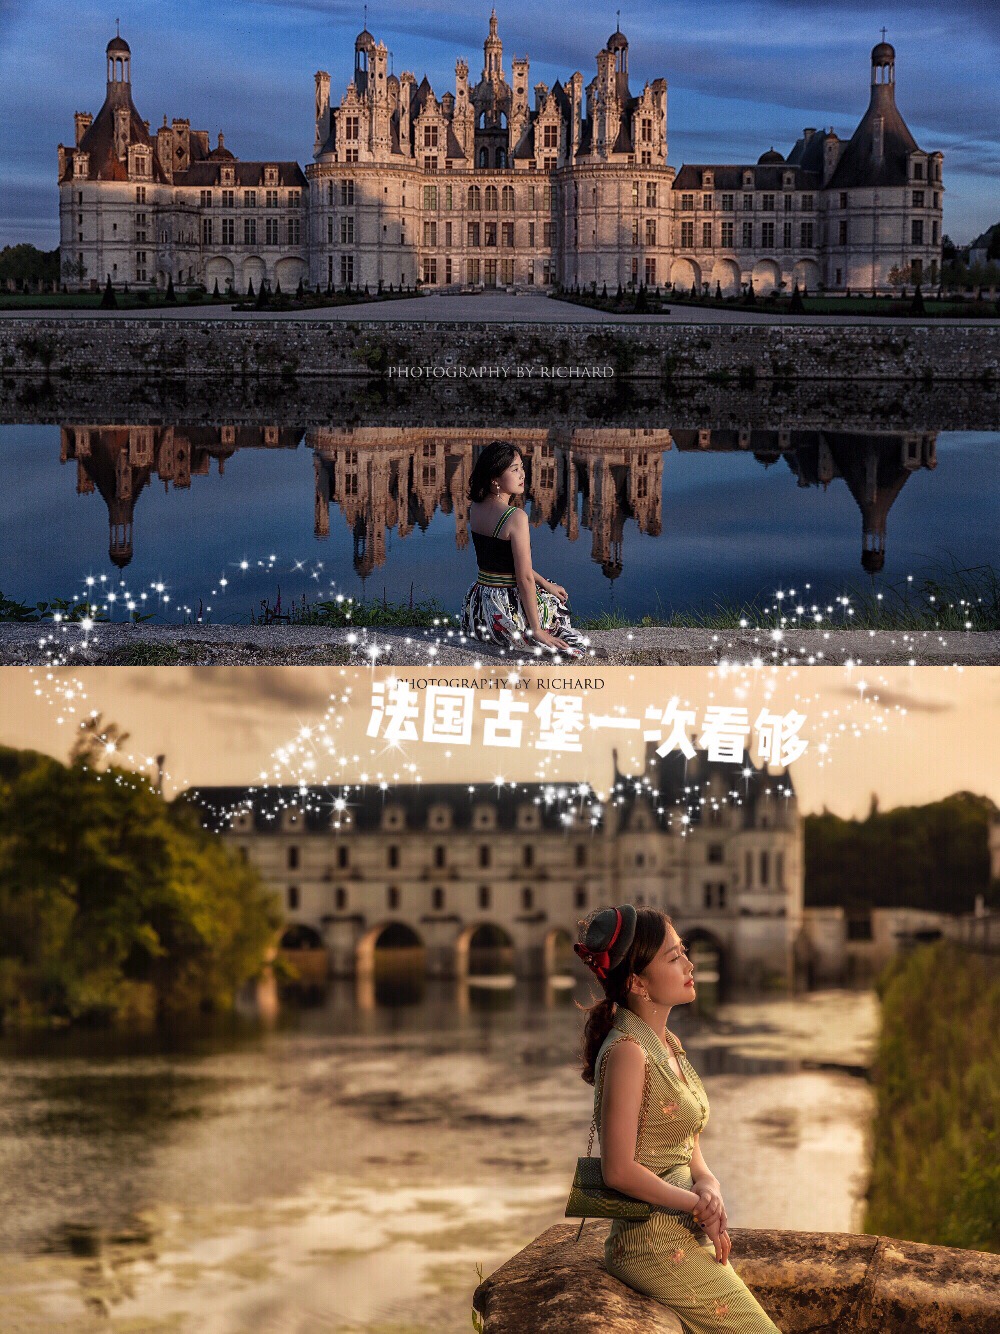 法国皇家古堡|🌸公主梦🌸卢瓦尔河谷Top3⃣️推荐城堡➕路线安排 - 👸 想要看法国的古堡，这篇笔记